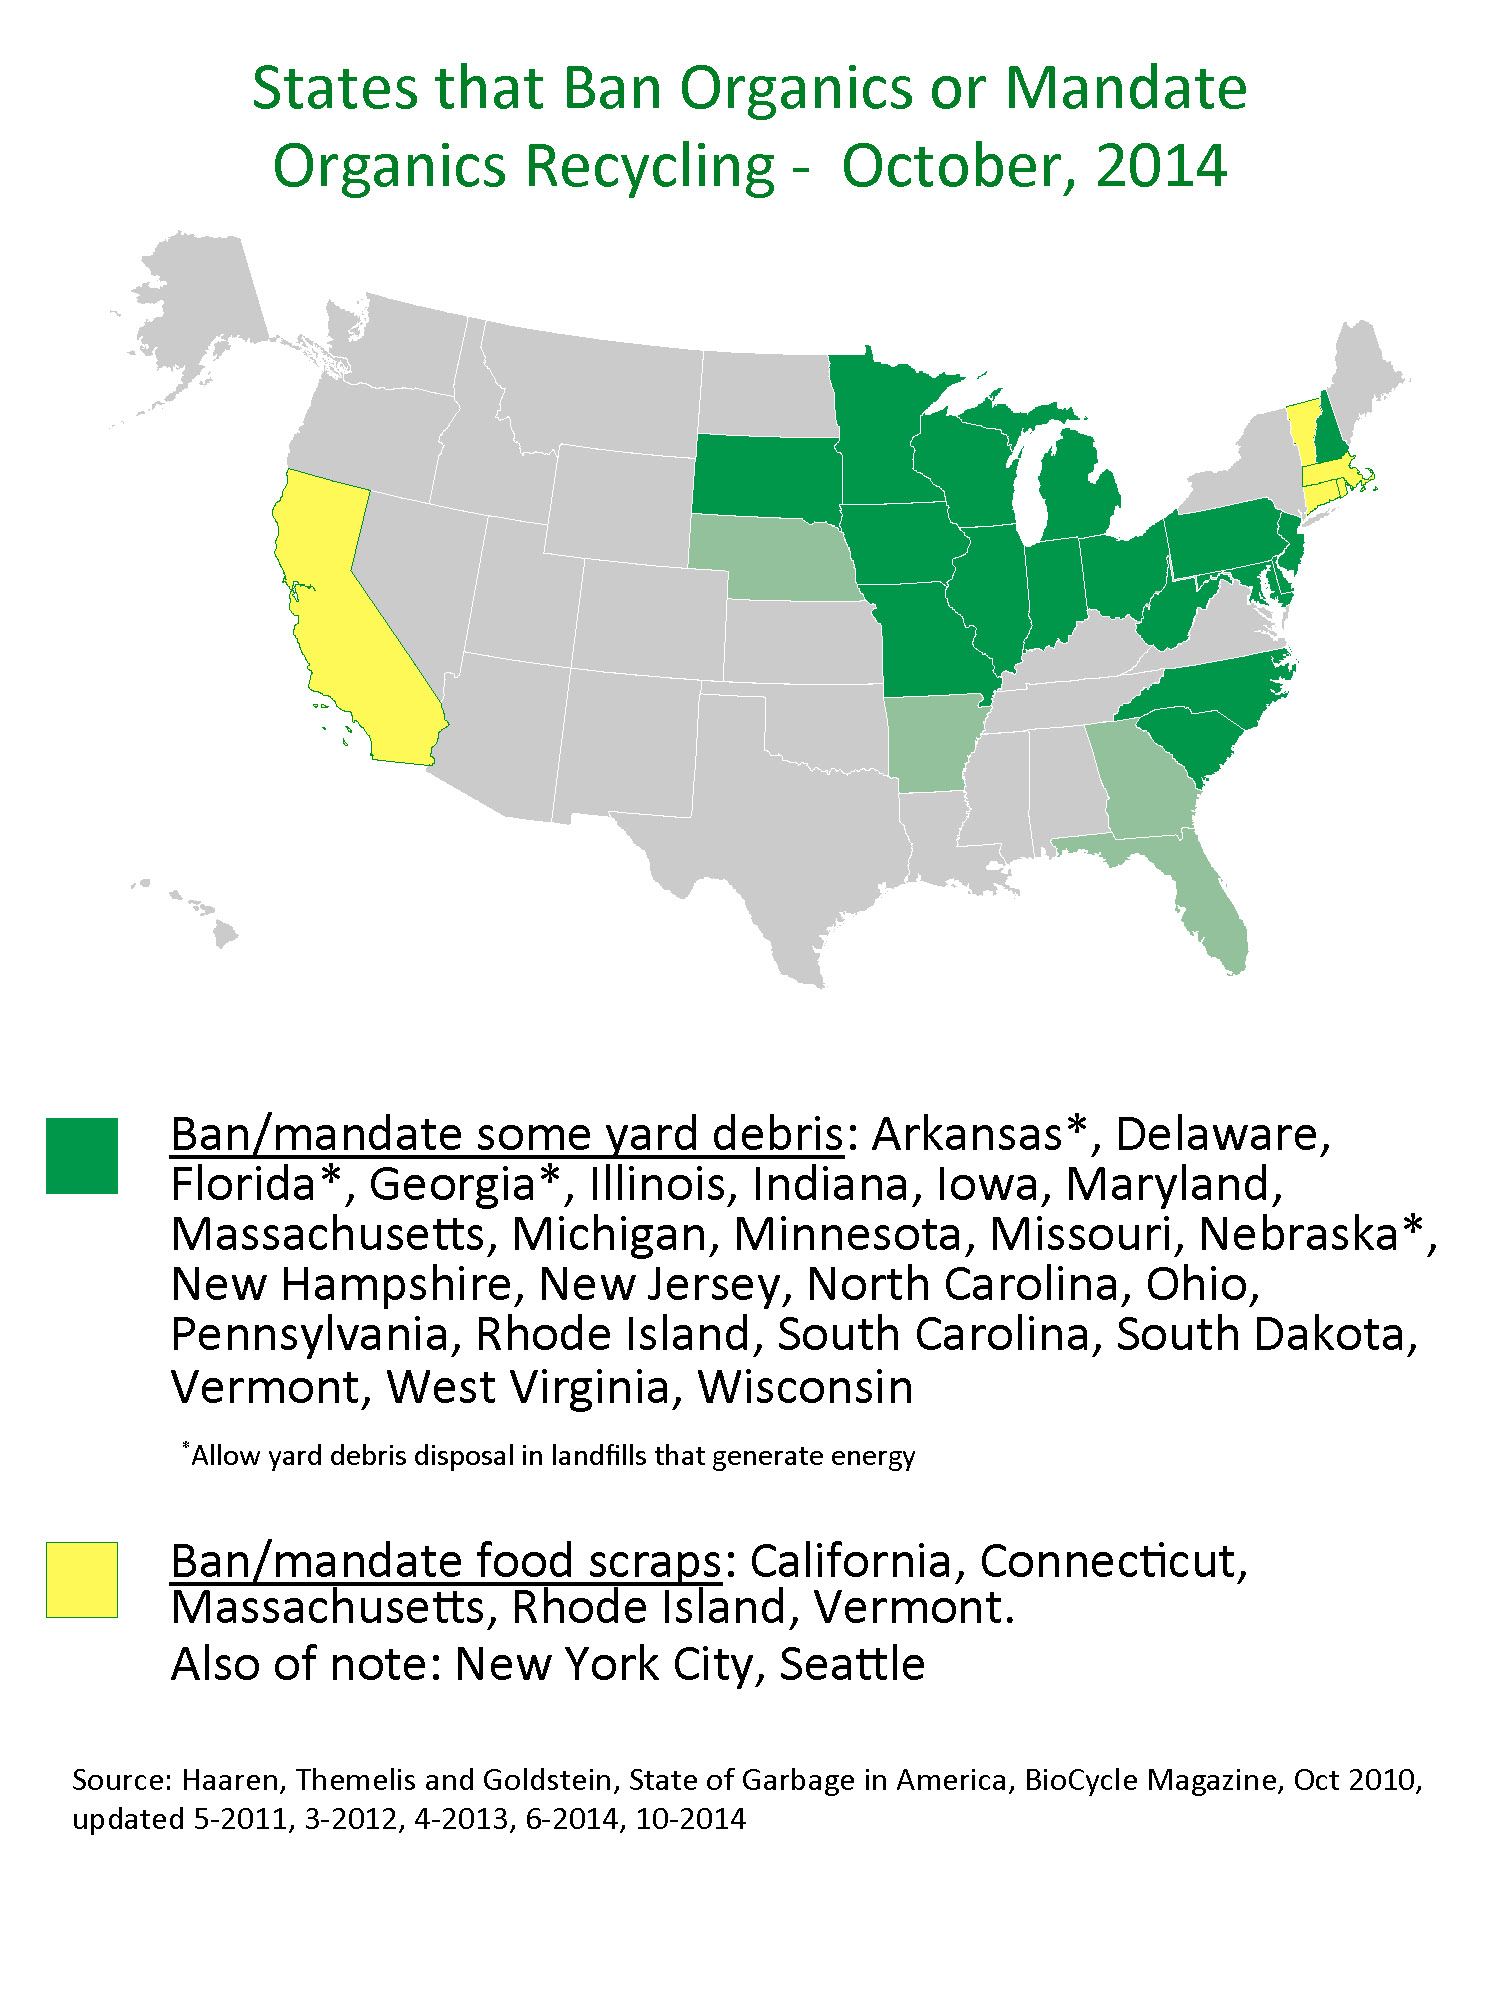 landfill ban map 10-2014 | US Composting Council